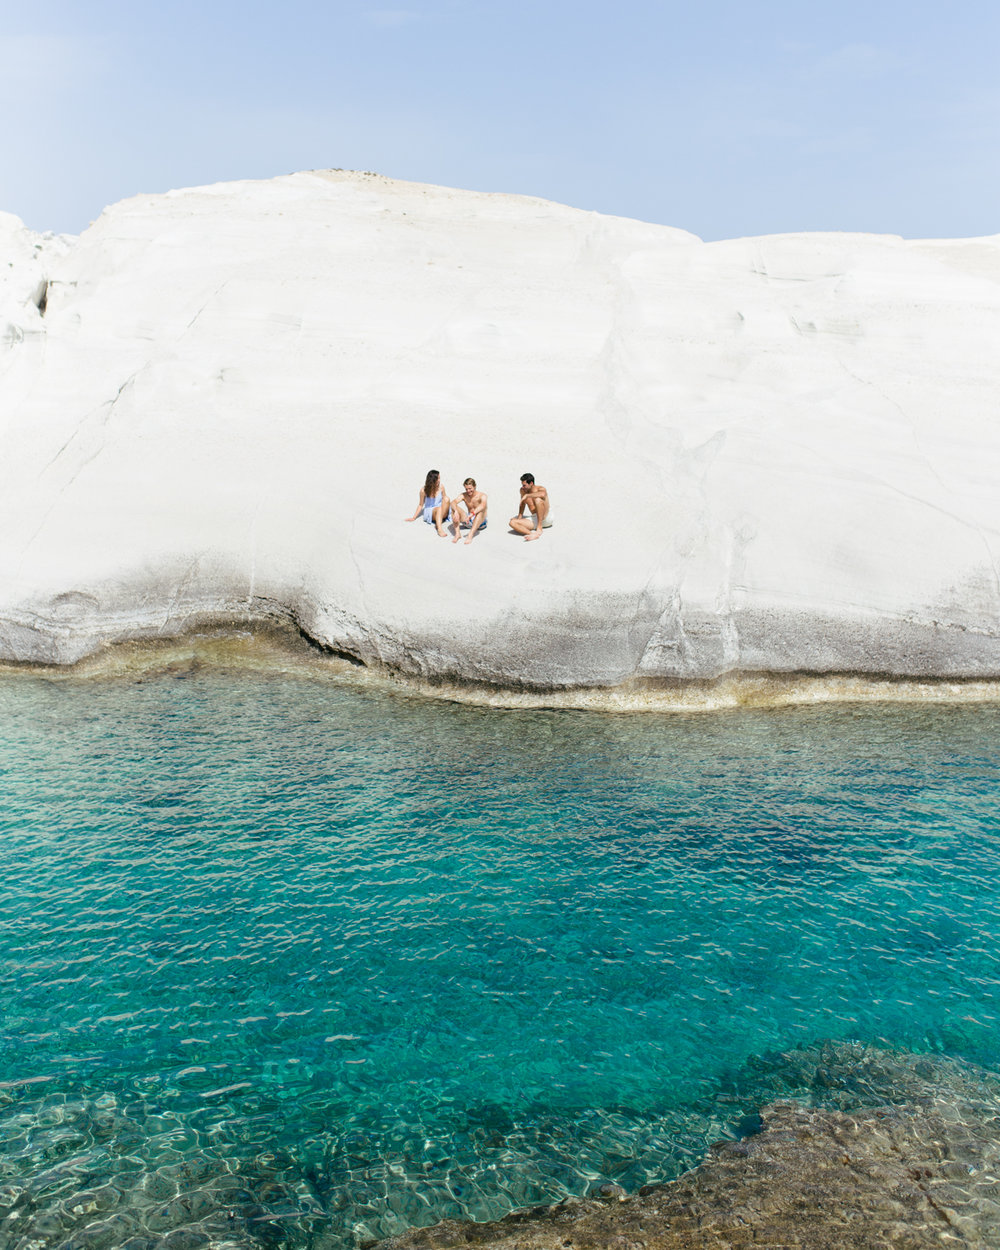 sarakiniko beach milos greece